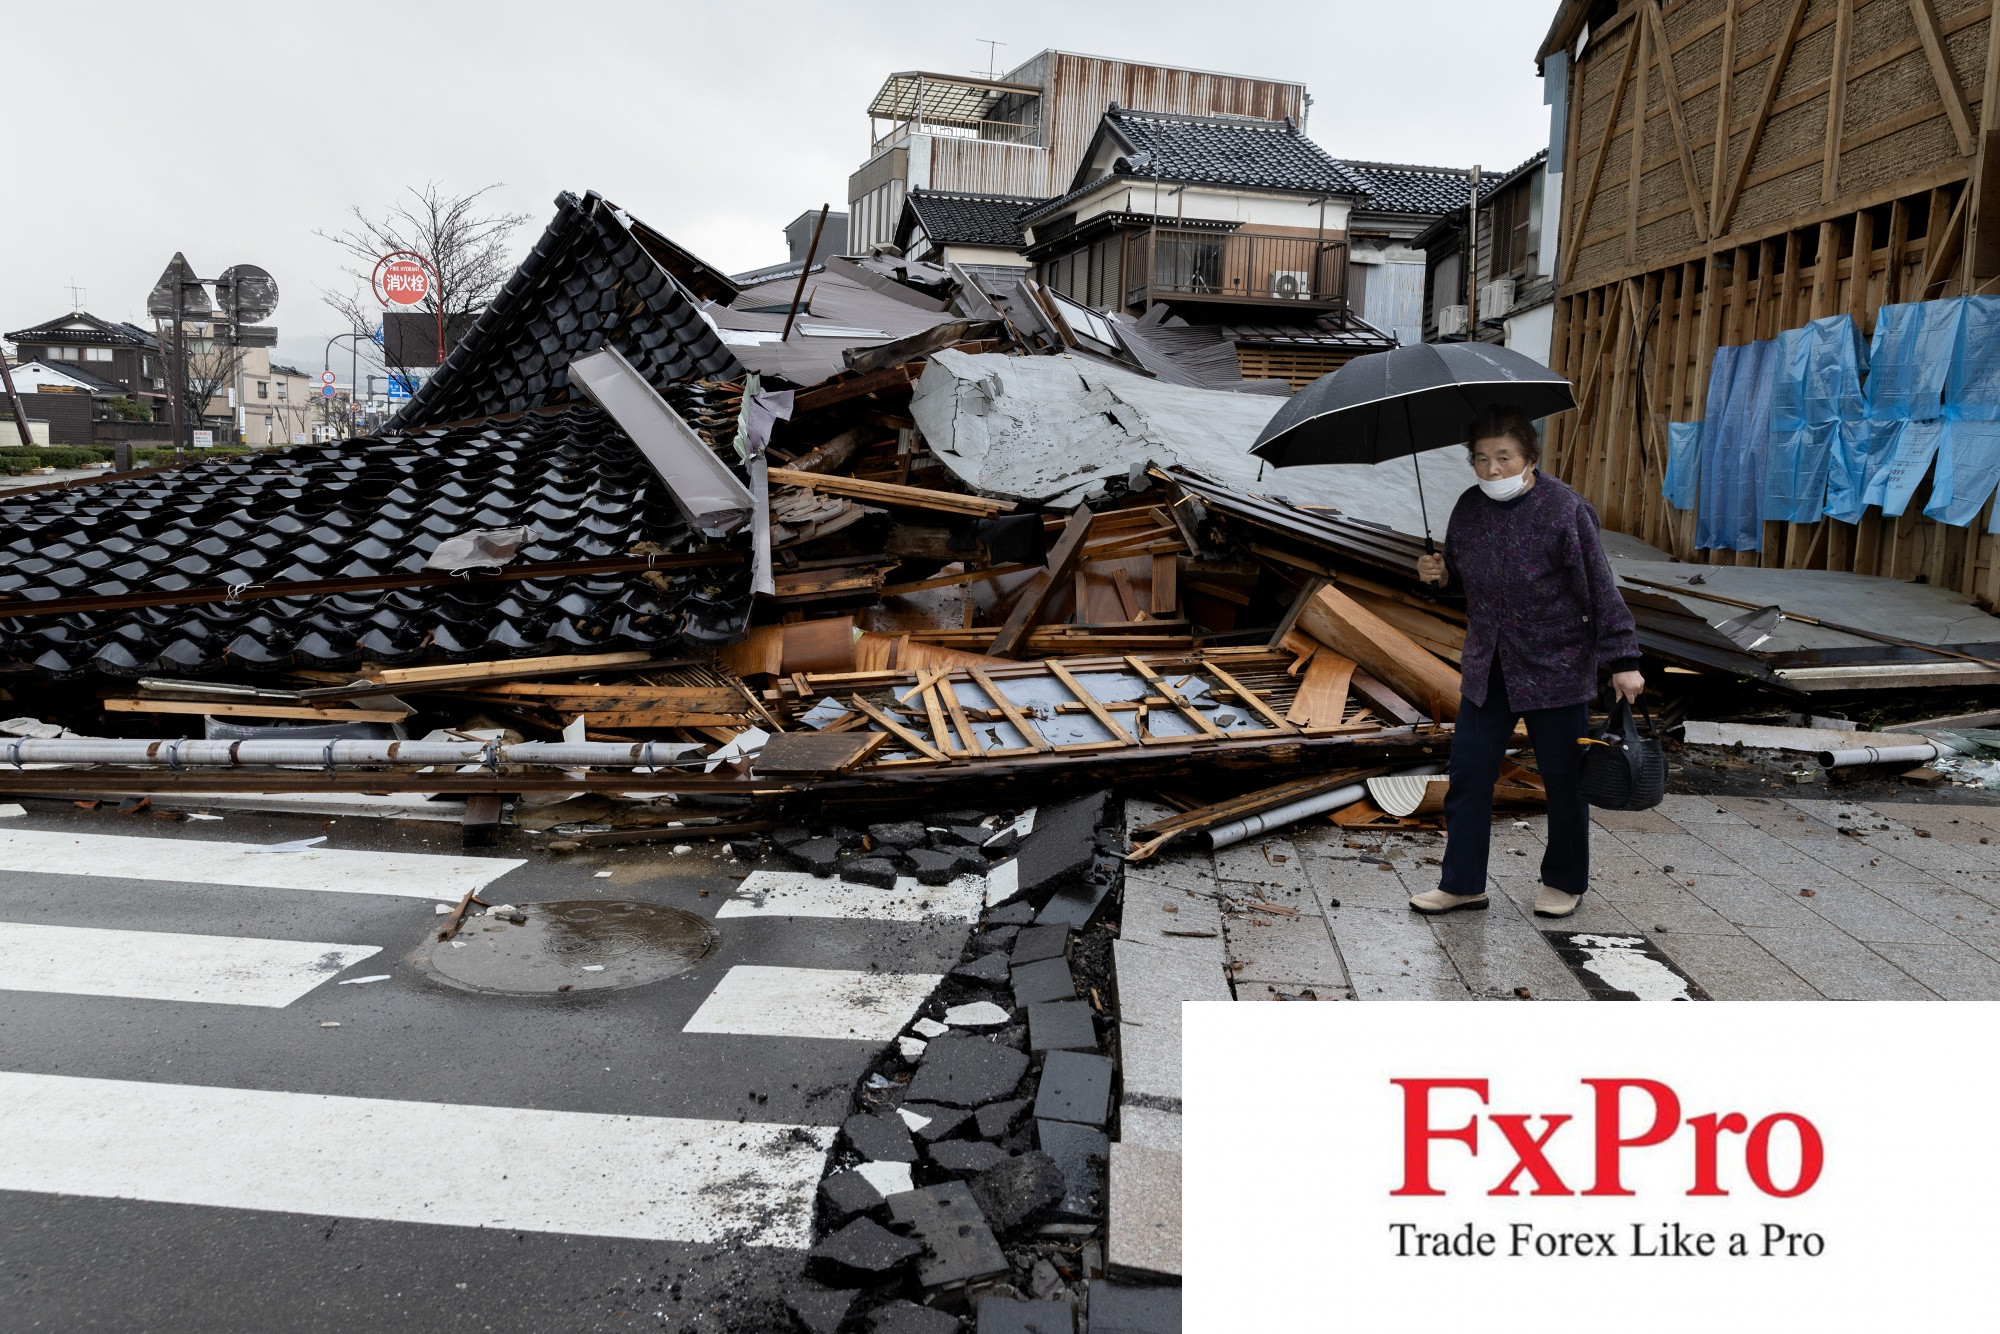 Thiệt hại do động đất tại Nhật Bản có thể không lớn như những năm gần đây